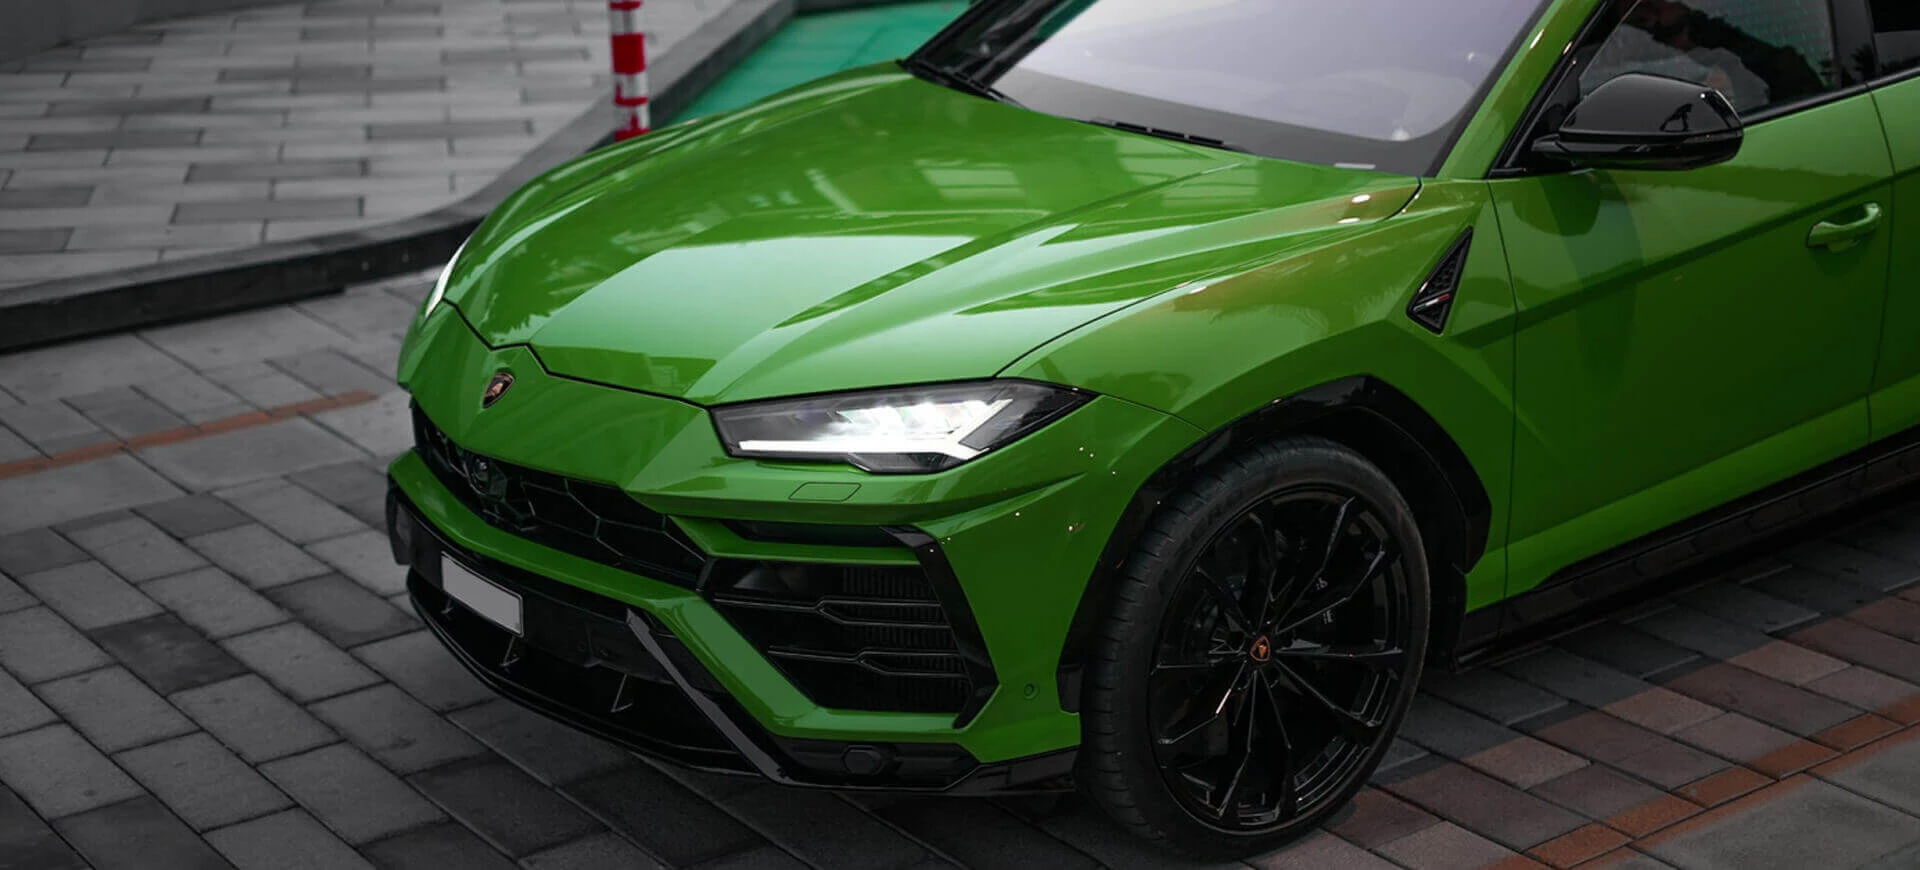 Lamborghini Urus verde